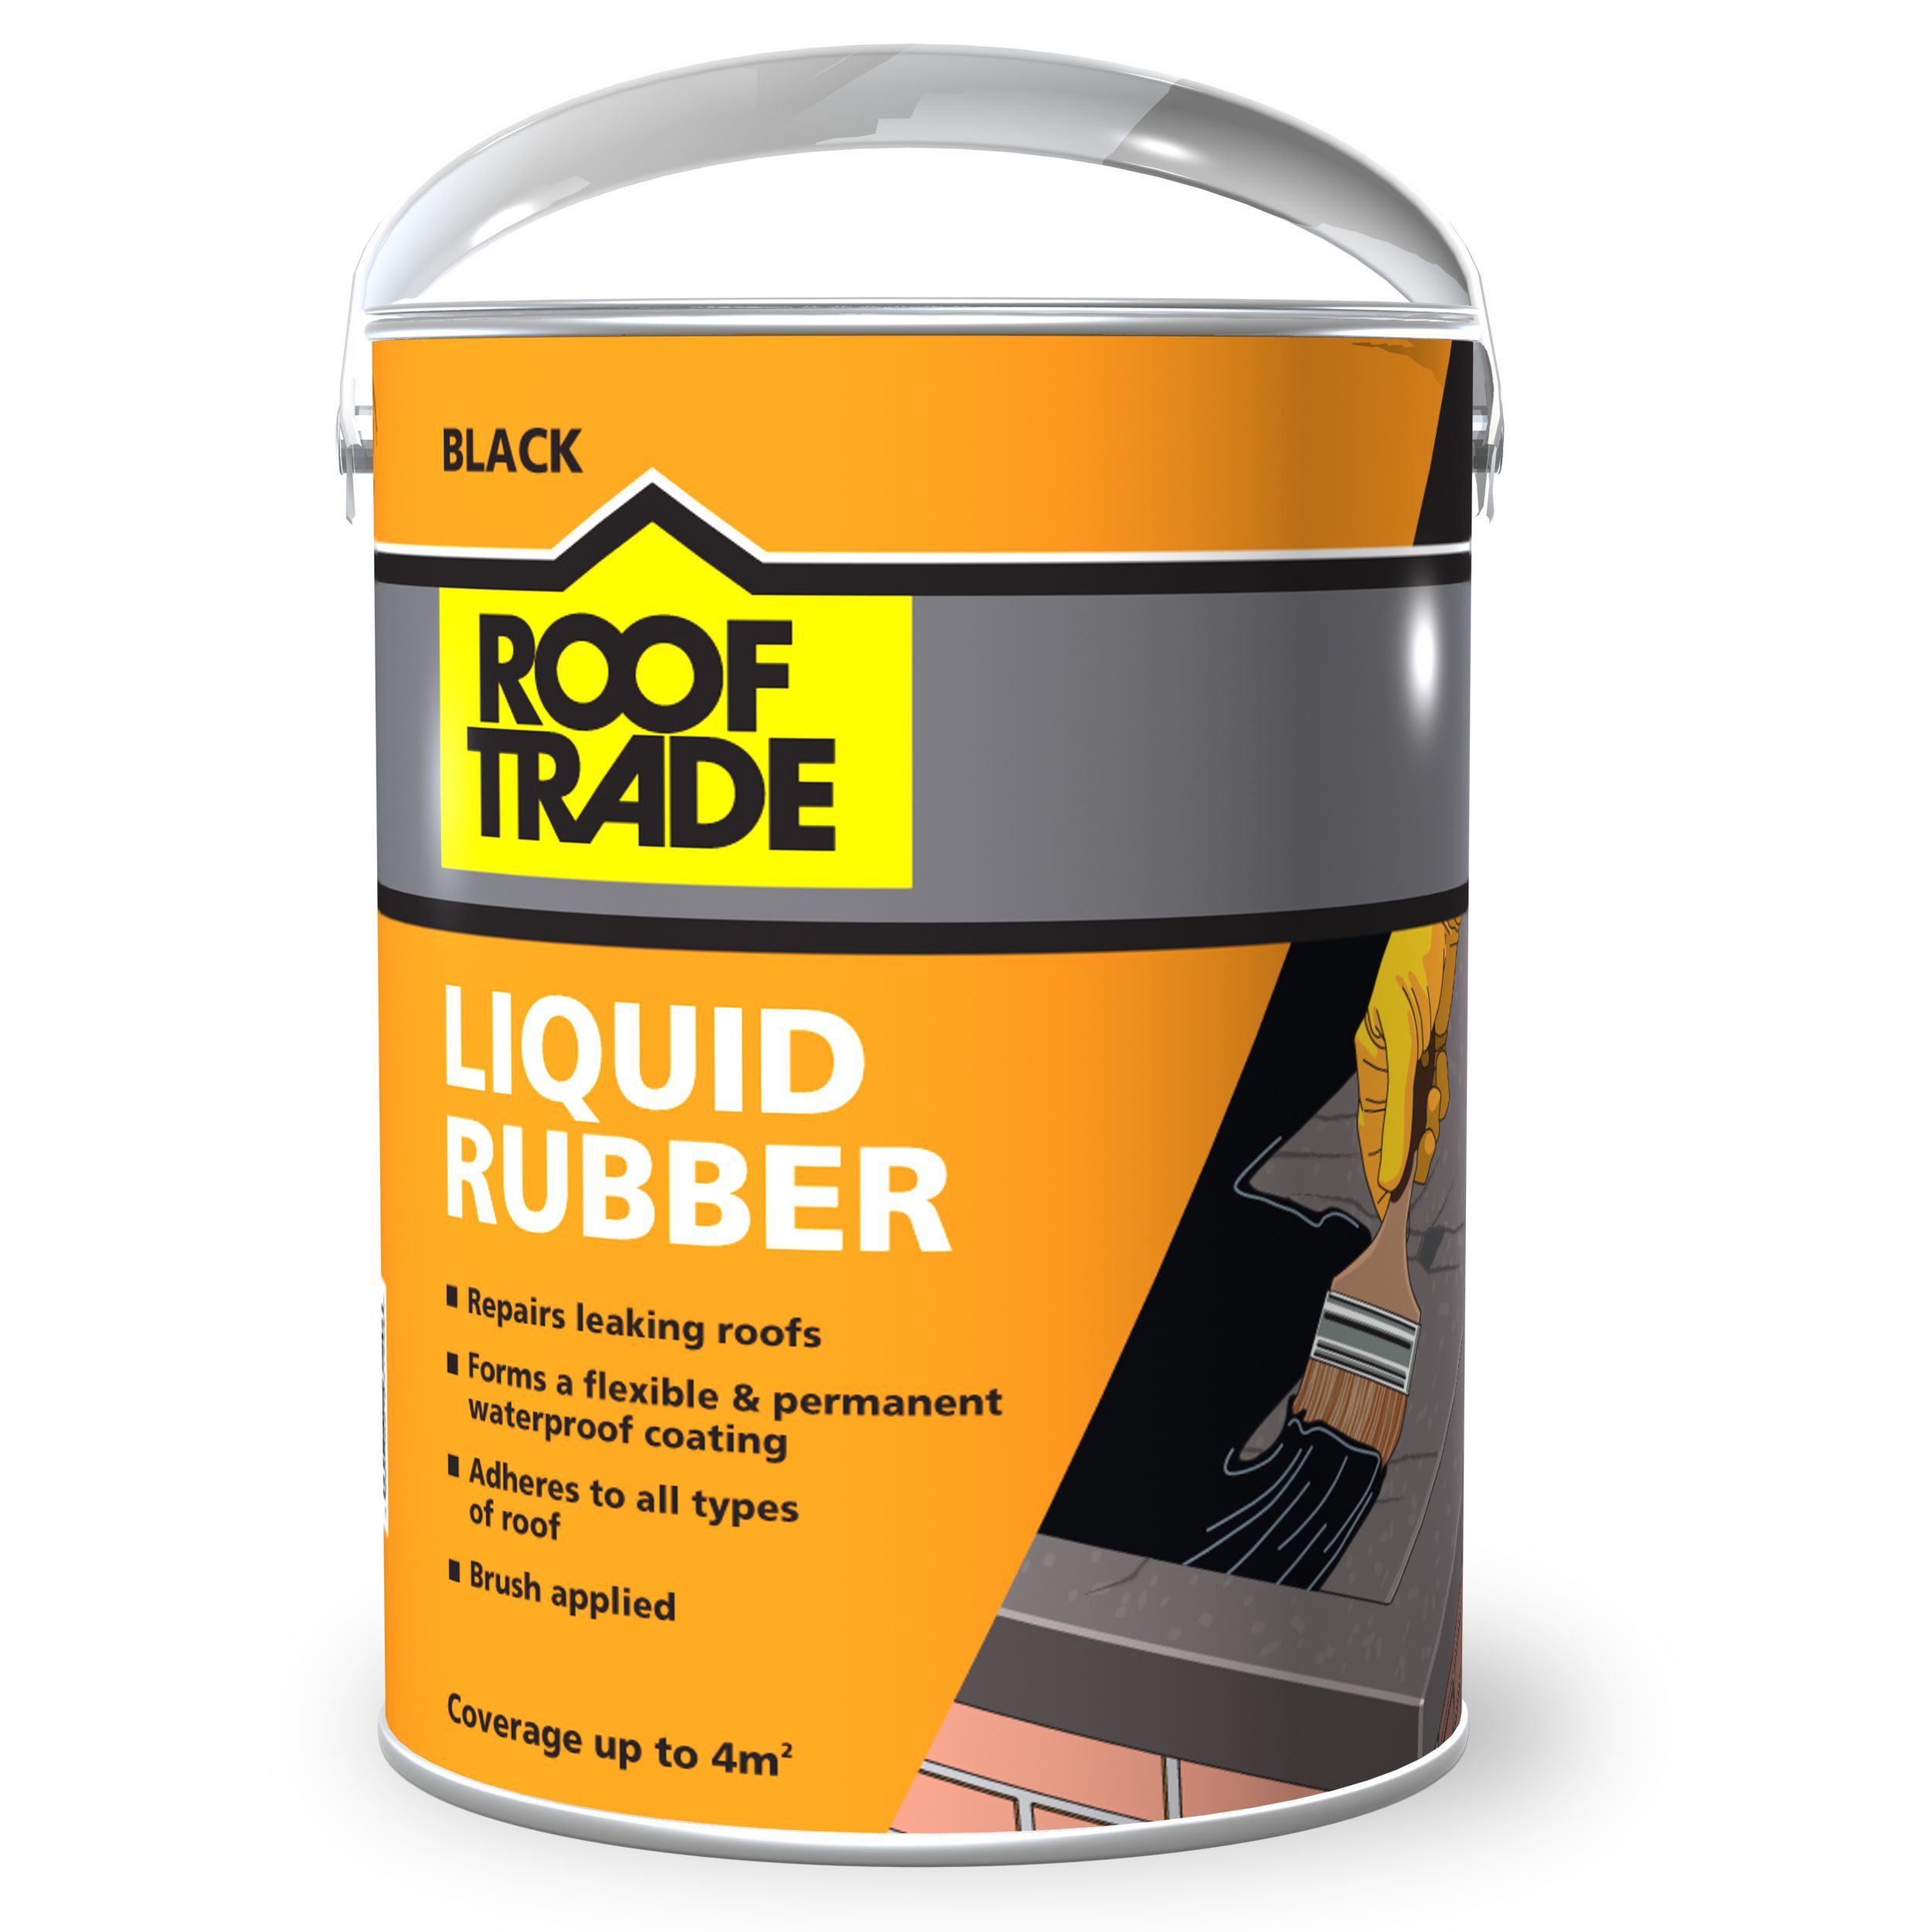 Rooftrade Black Liquid Rubber Roof Sealant 4L | Departments | DIY at B&Q